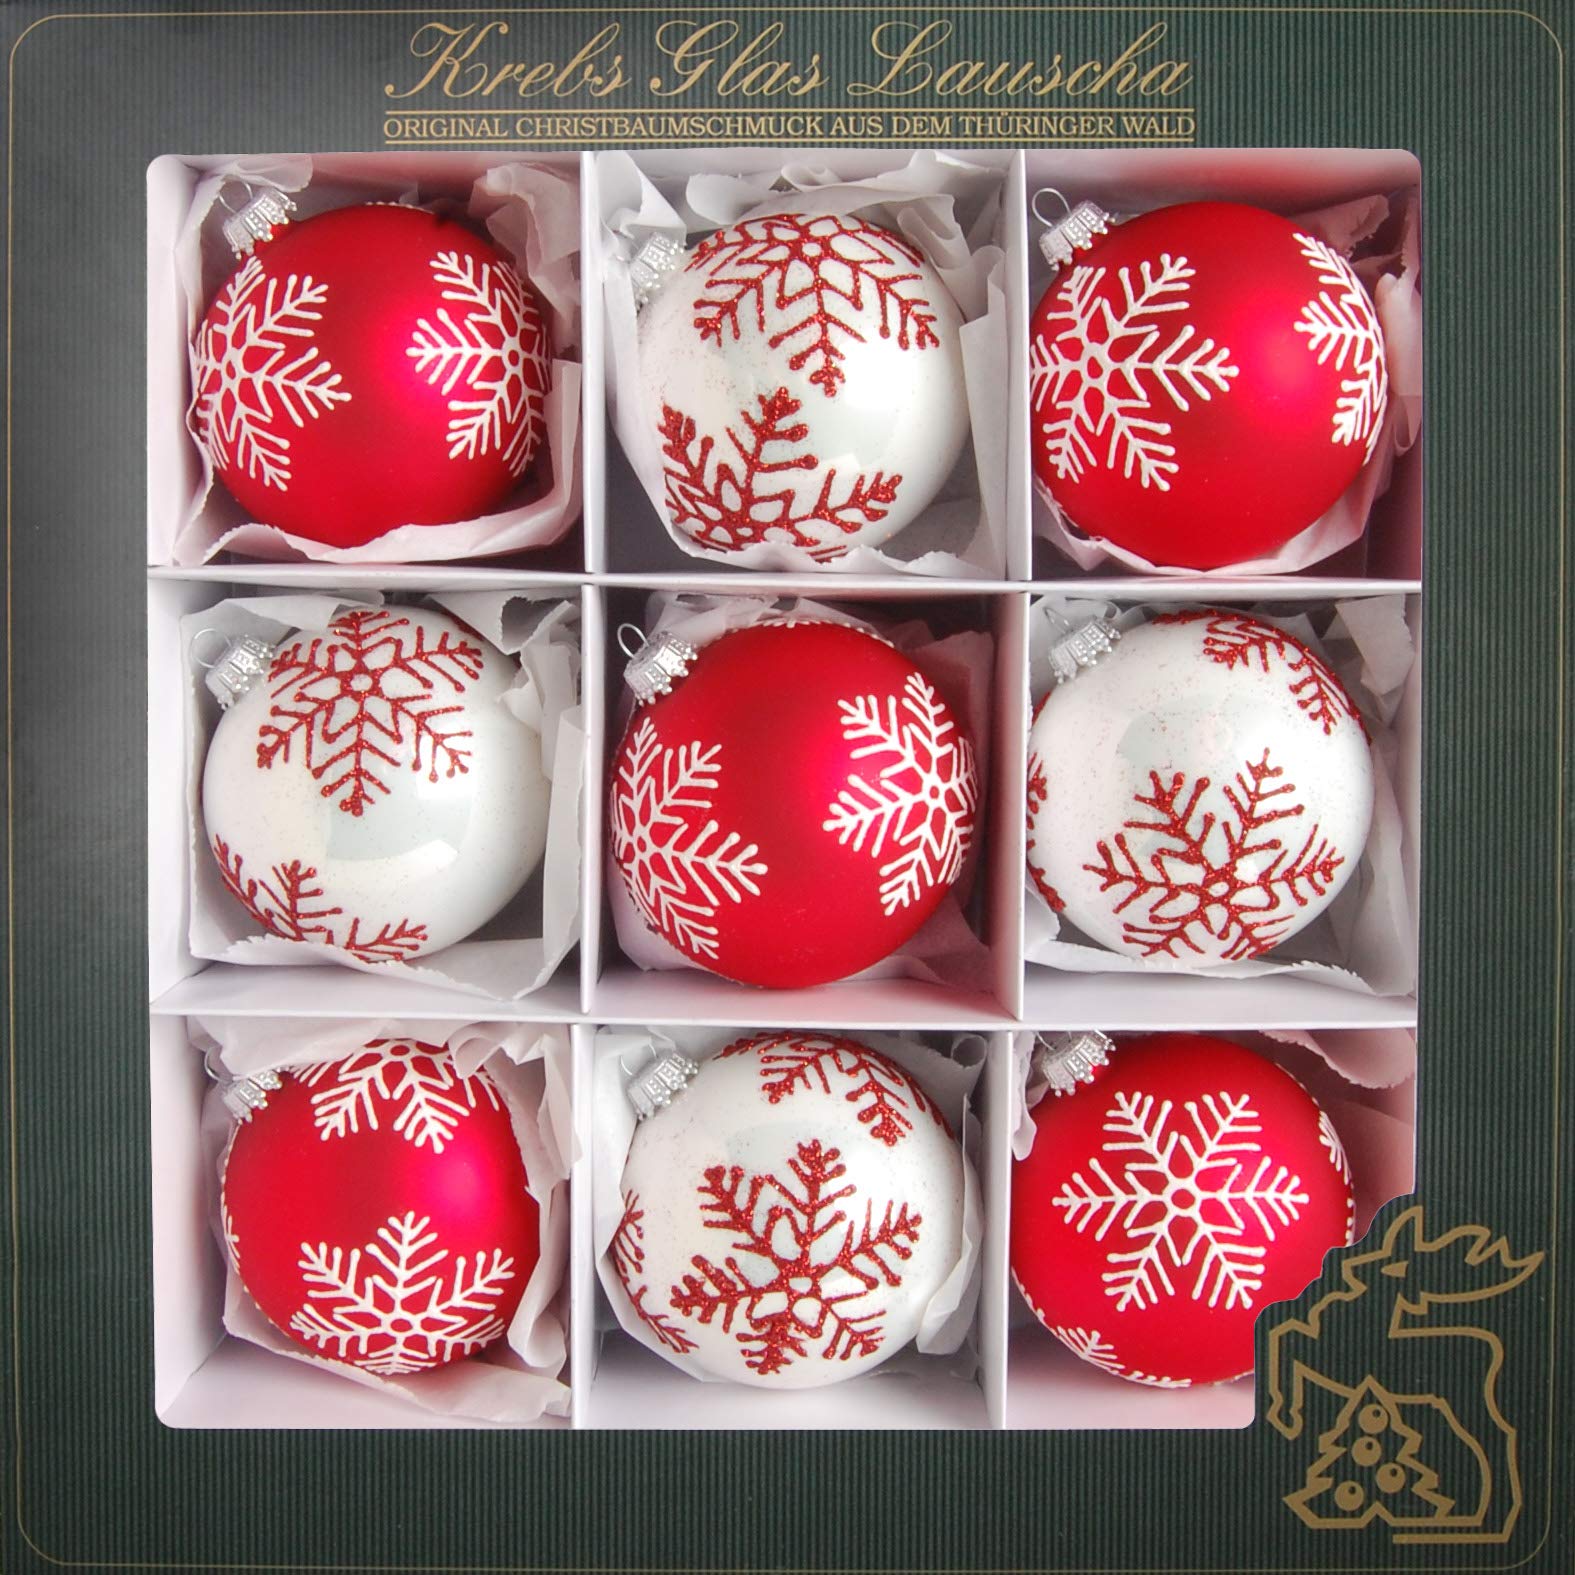 Krebs Glas Lauscha - Weihnachtsdekoration/Christbaumschmuck aus Glas - Weihnachtskugeln - Motiv: Schneeflocken Rot/Weiß - 9 Stück - Größe: ca. 8 cm